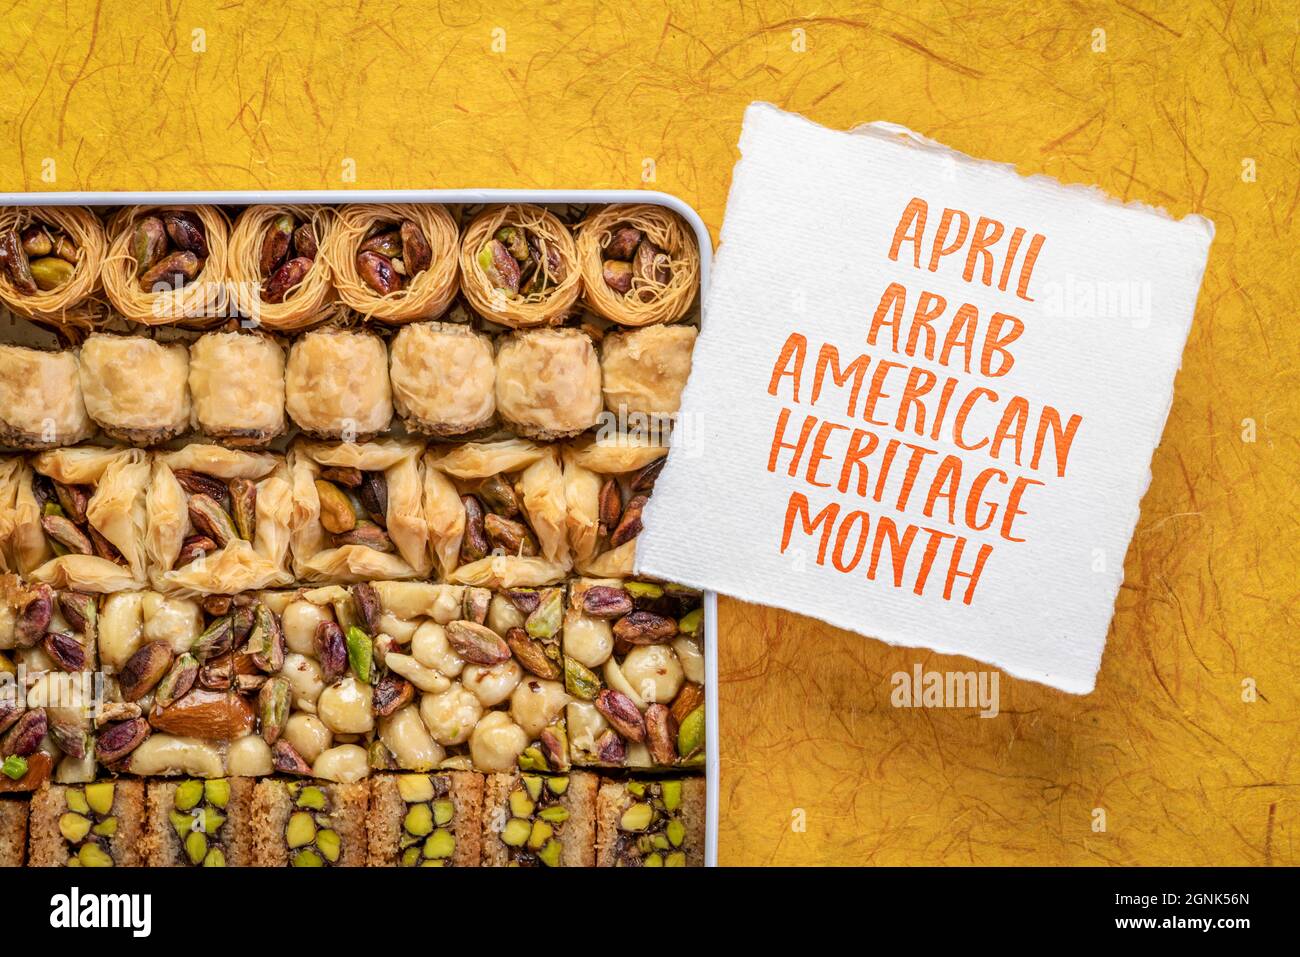 Aprile - Arab American Heritage Month, nota di promemoria con una scatola in scatola di tradizionale pasticceria turca di baklava Foto Stock